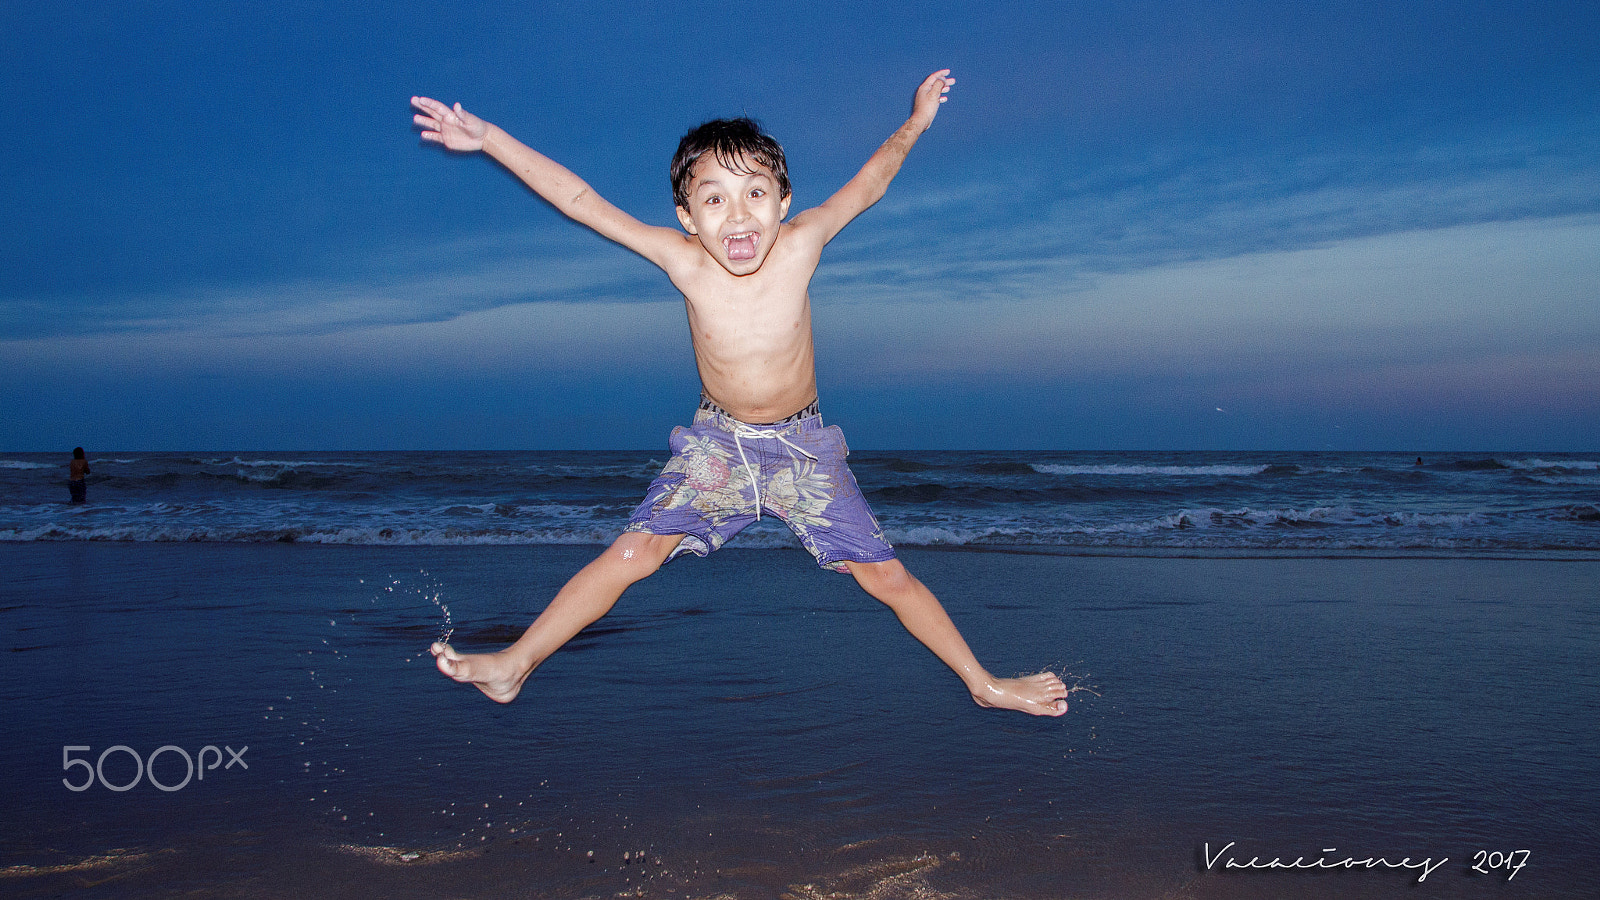 Canon EOS 7D sample photo. Hollidays happy on the beach photography